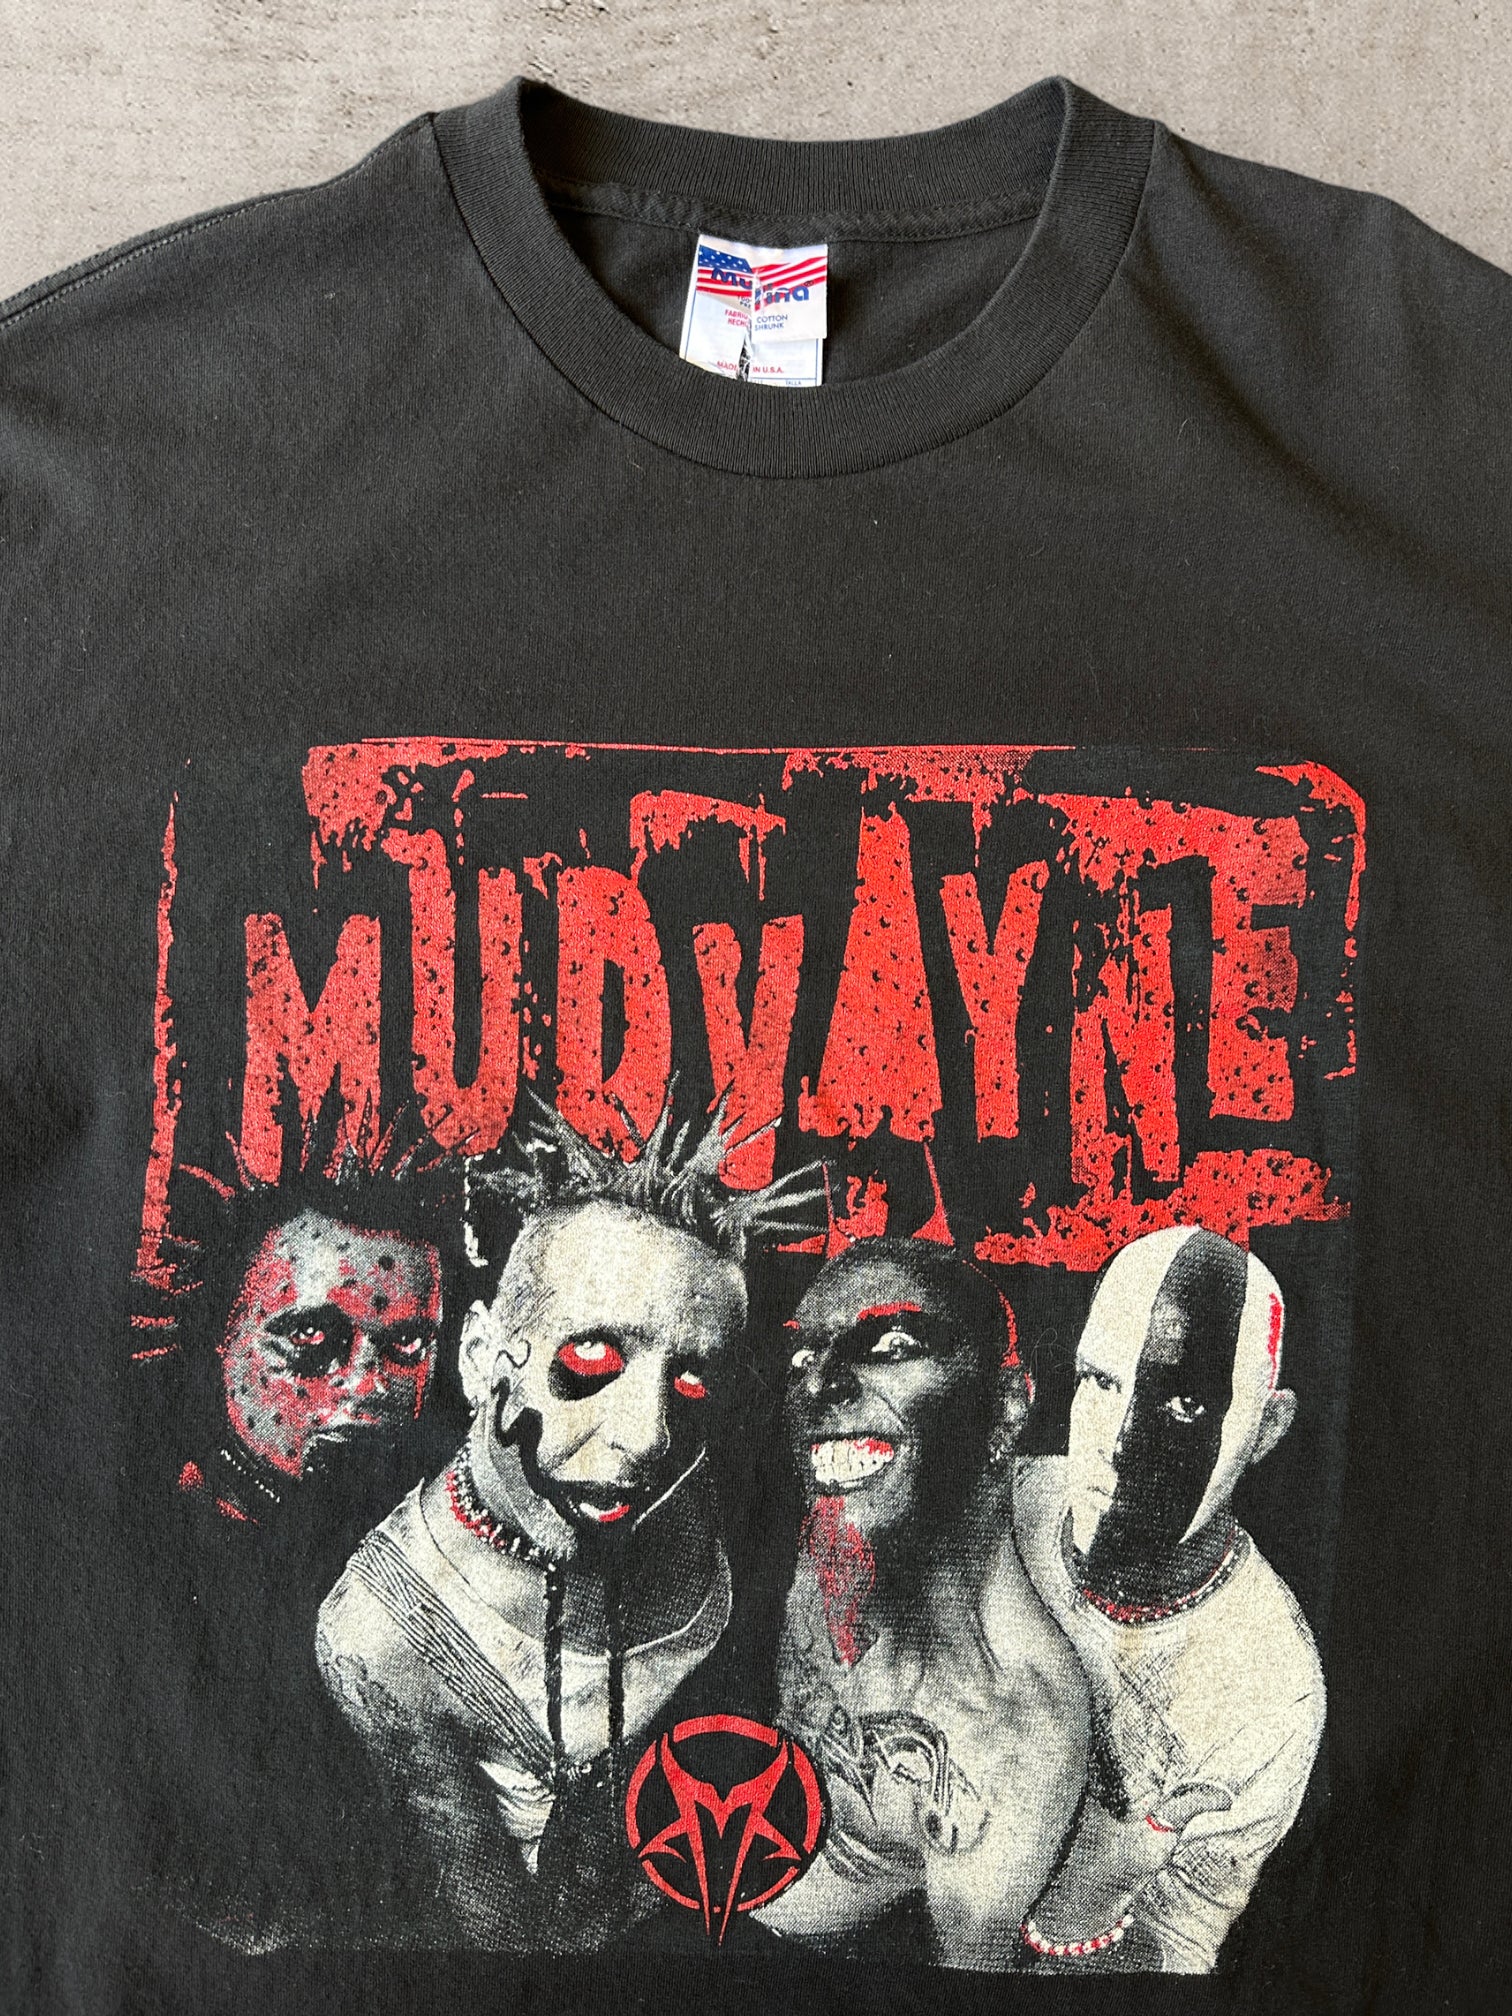 00s Mud Vayne Metal Rock Band T-Shirt - XL